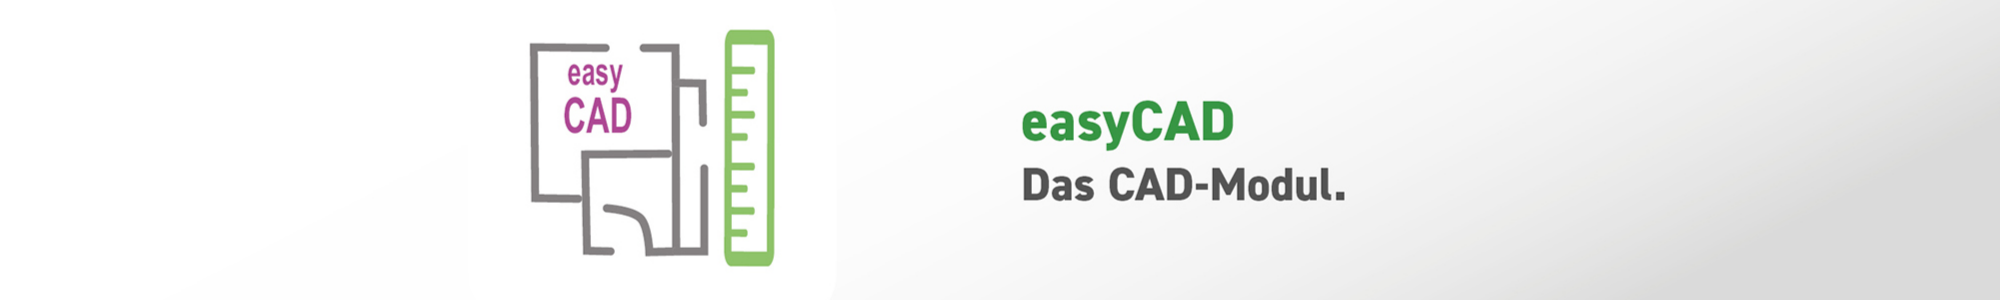 easyCAD - isl-kocher GmbH